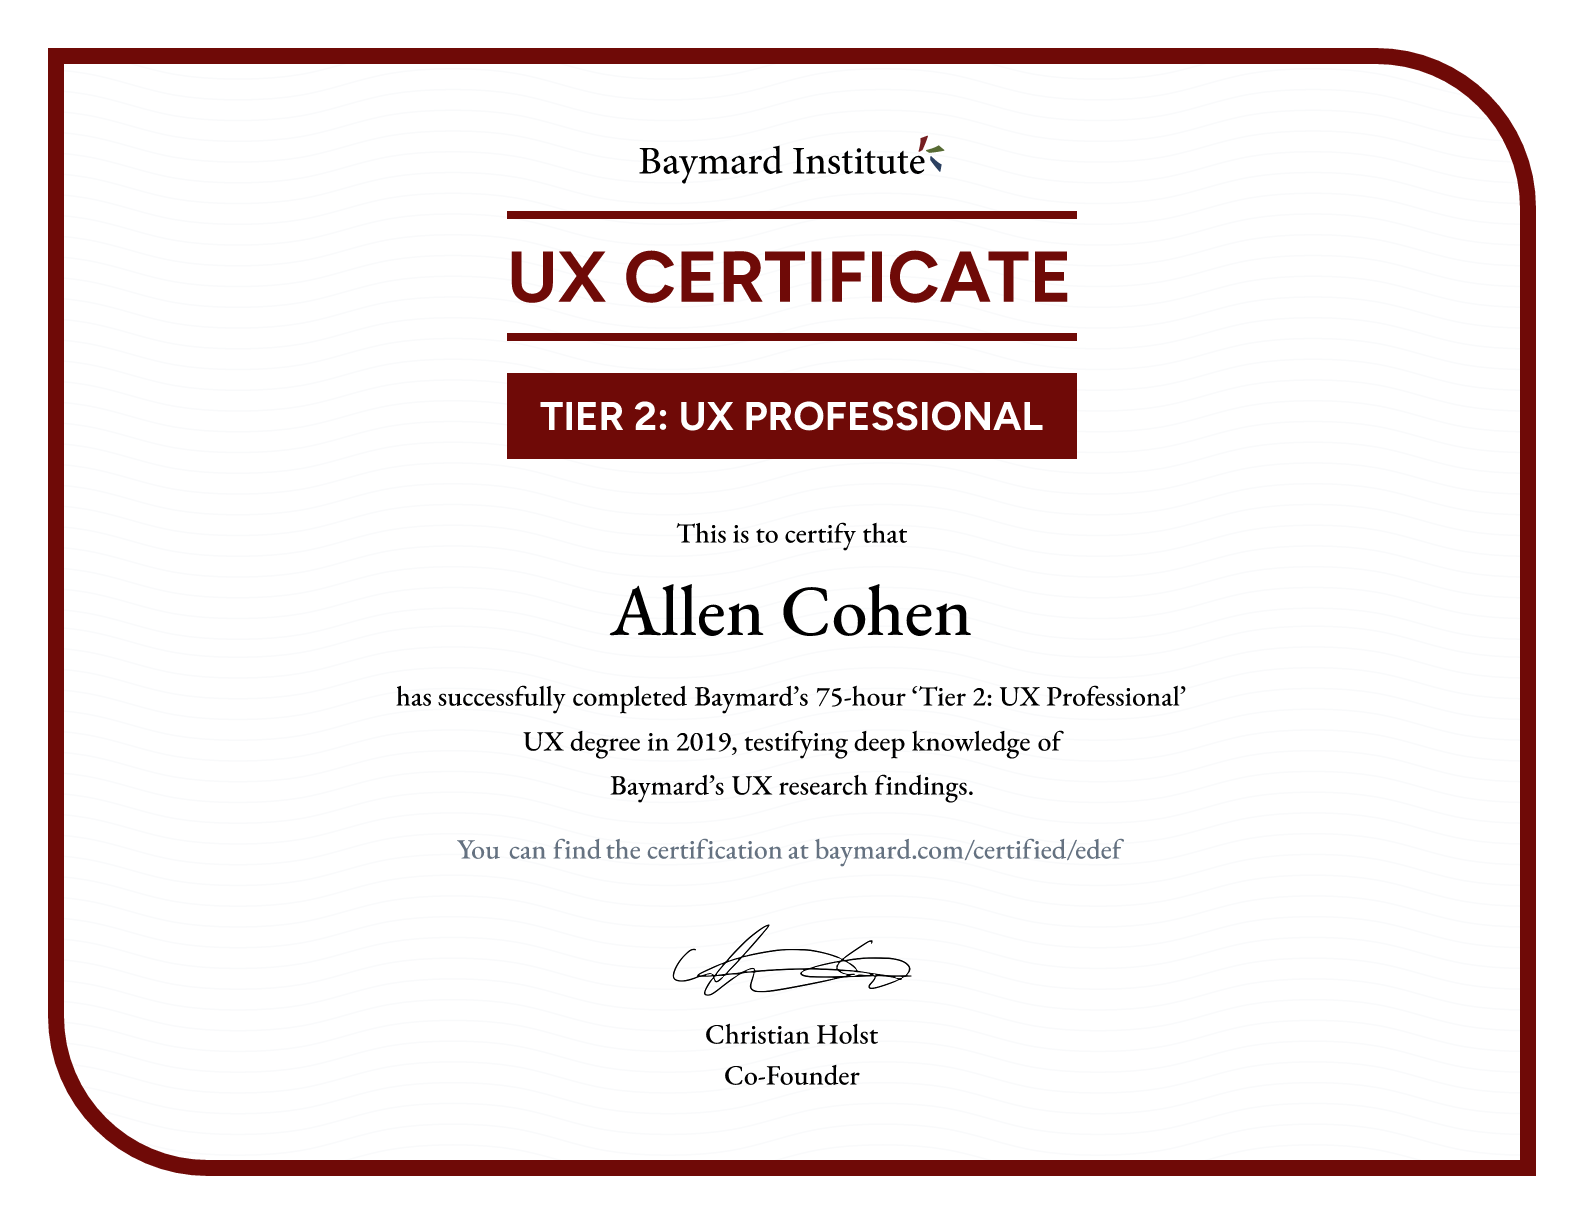 Allen Cohen’s certificate